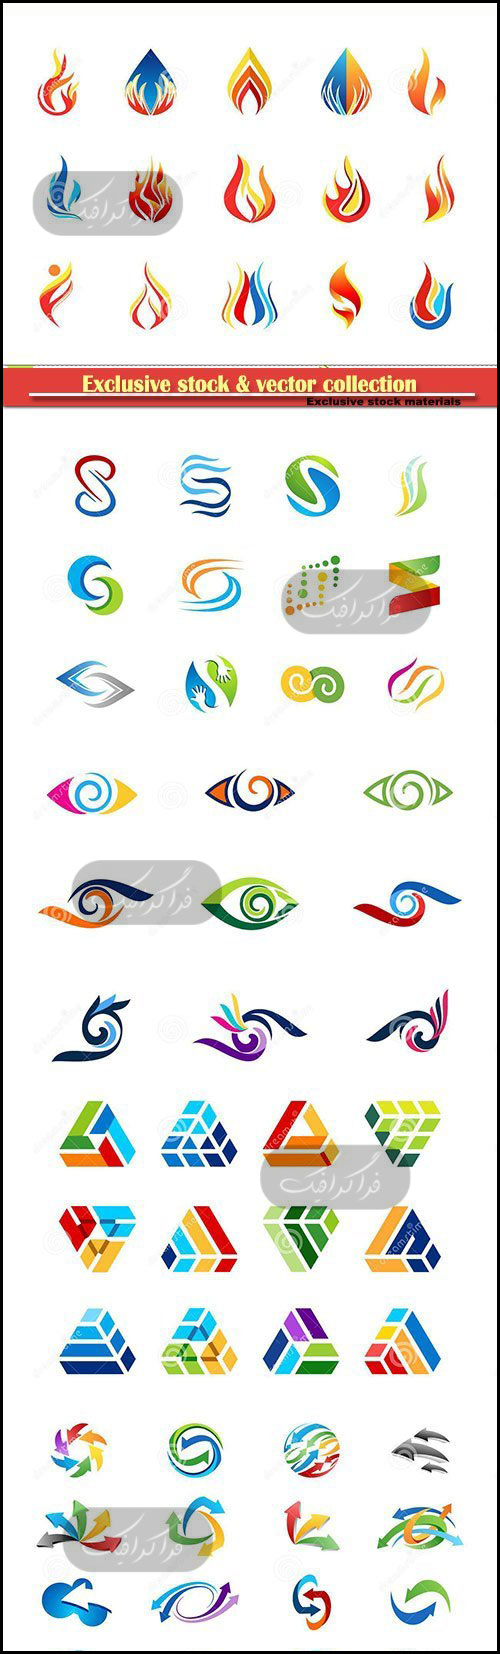 دانلود لوگو های وکتور انتزاعی Abstract Logos - شماره 19